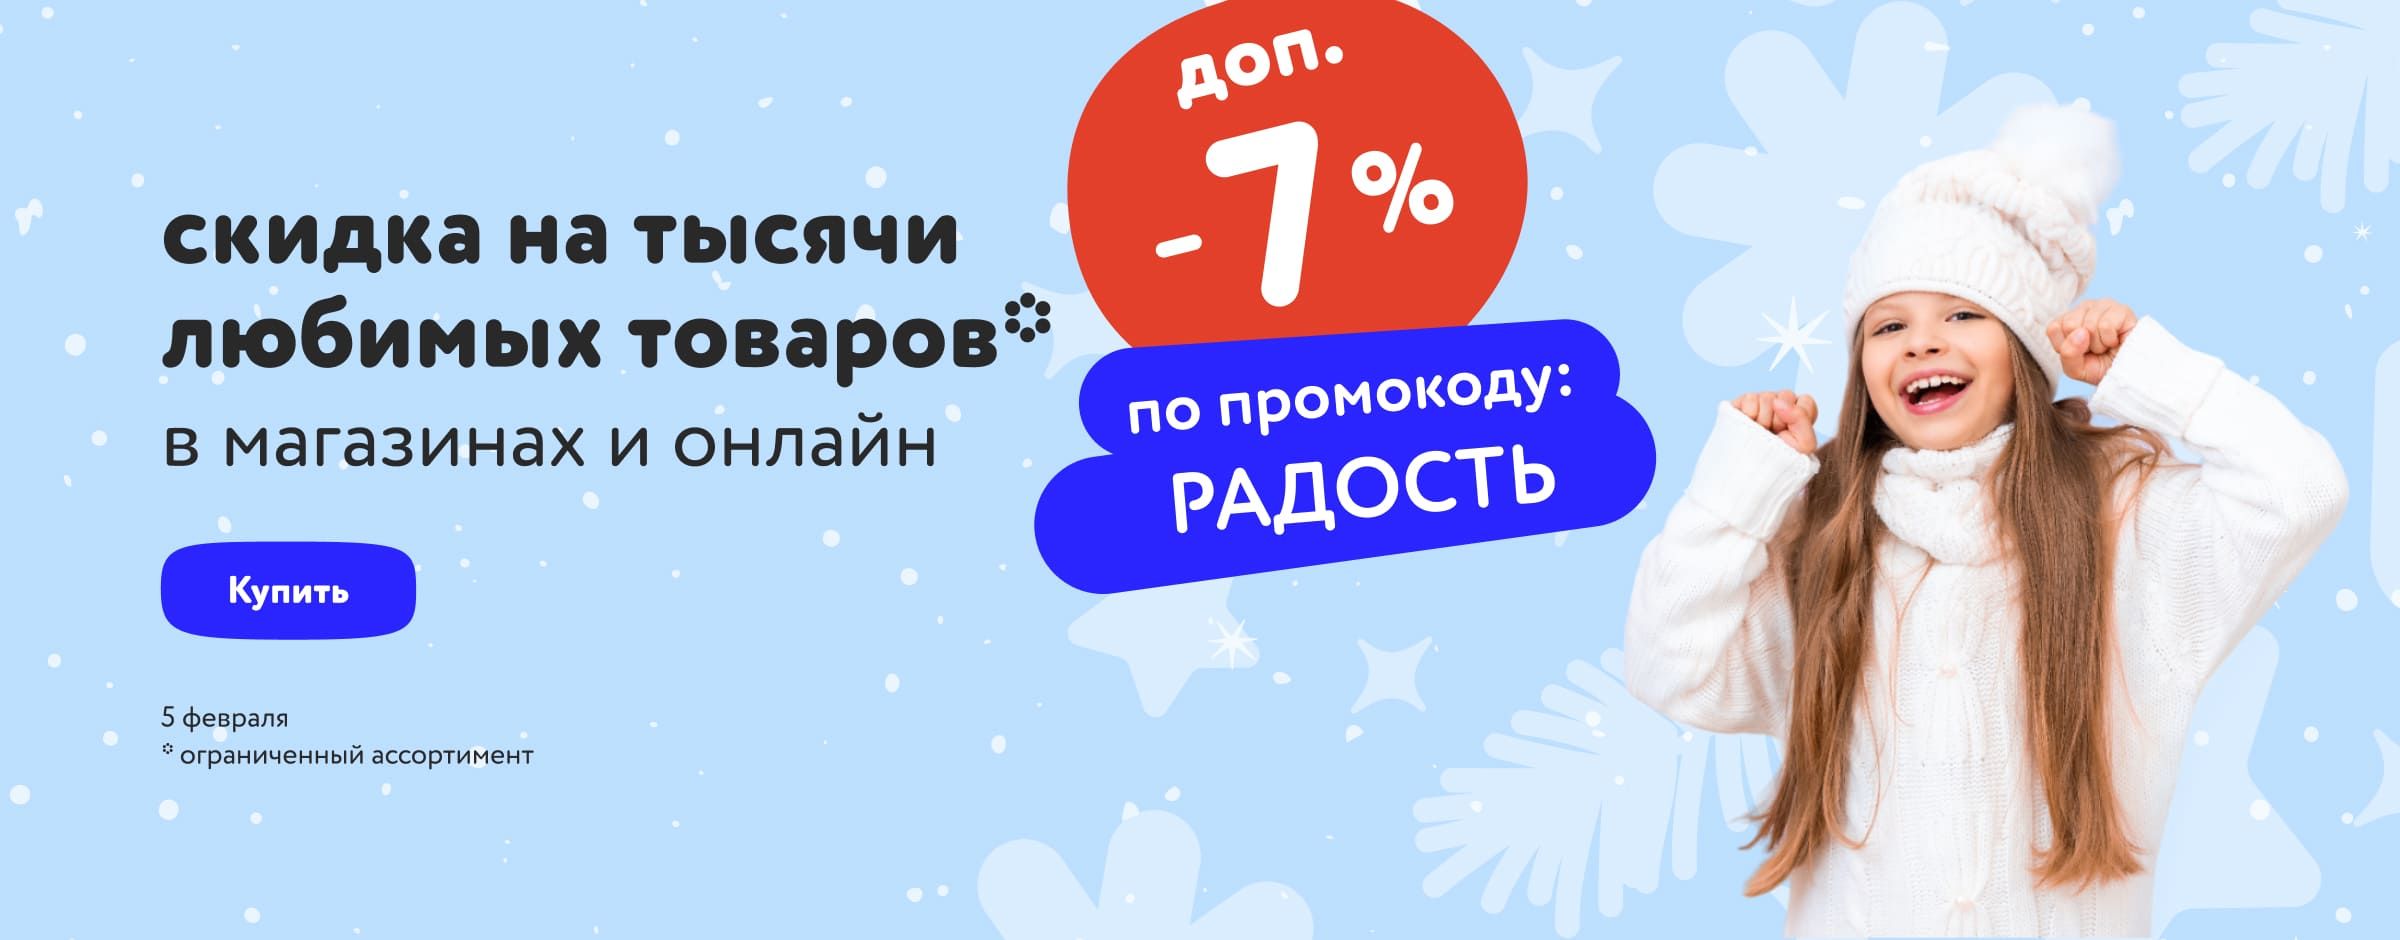 Доп. скидка 7% по промокоду на тысячи любимых товаров_ категории карусель